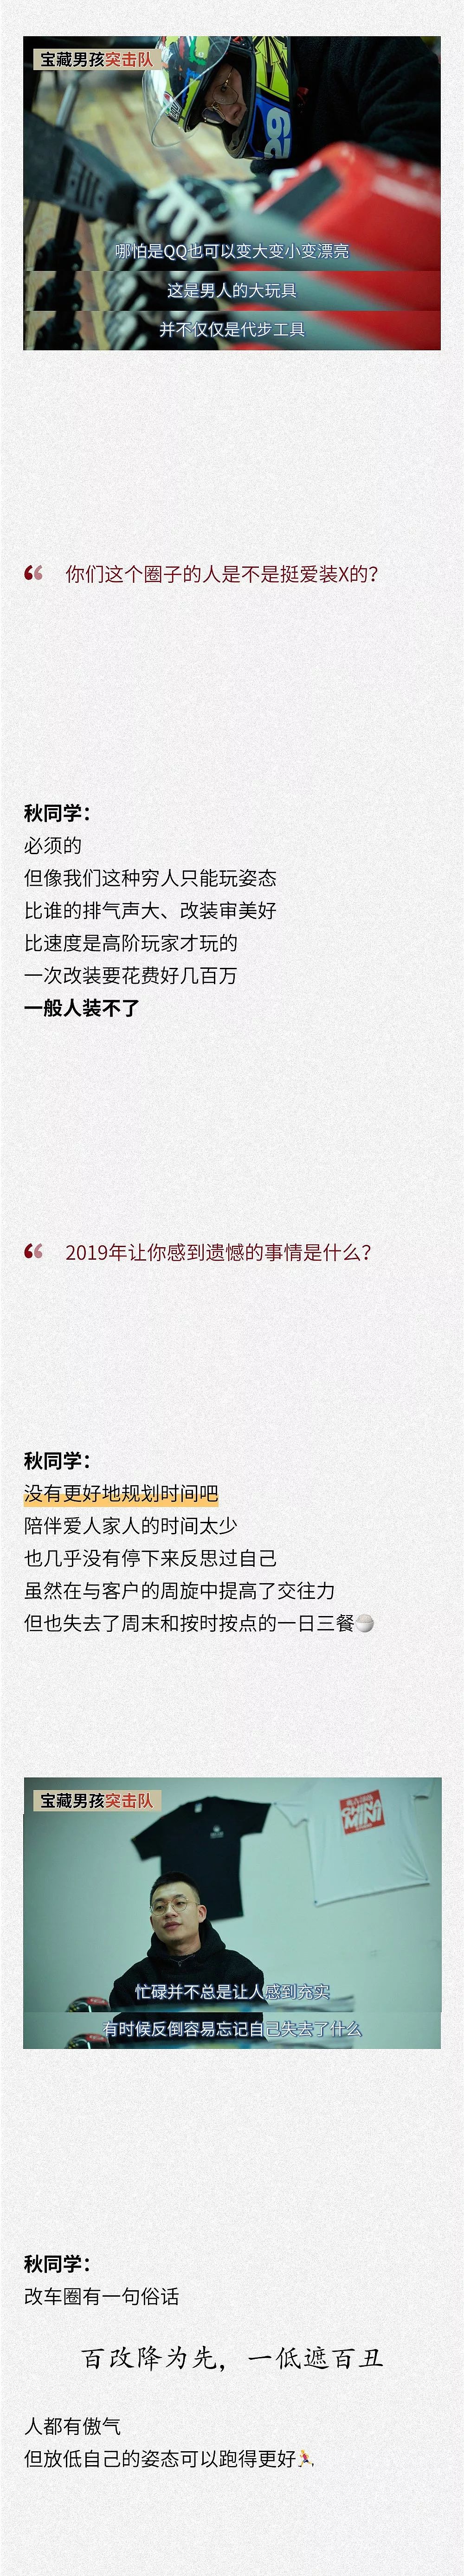 2019让人脸红心跳的宝藏男孩集锦 - 12